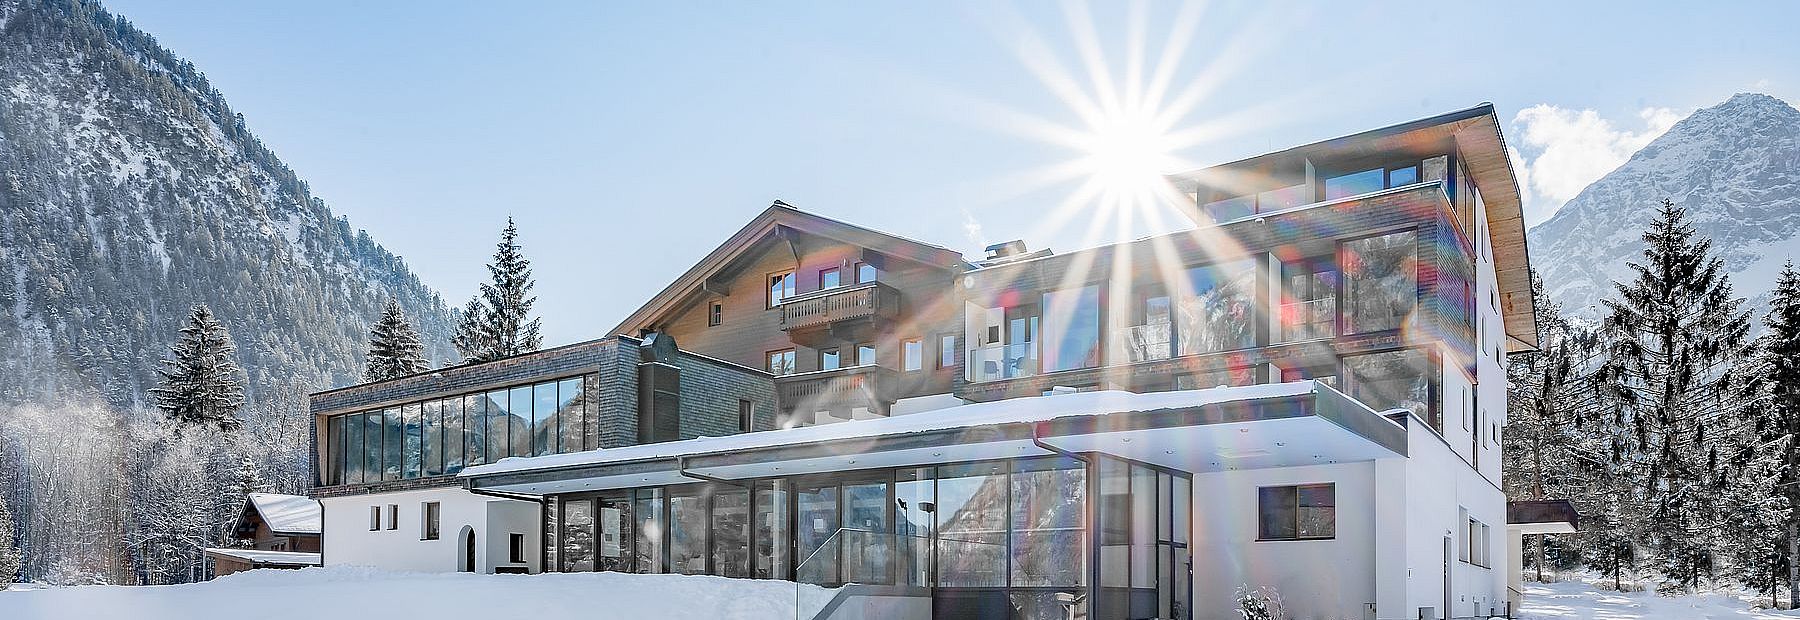 Hotel Fischer am See im Winter bei Sonnenschein mit Blick auf die verschneiten Berge